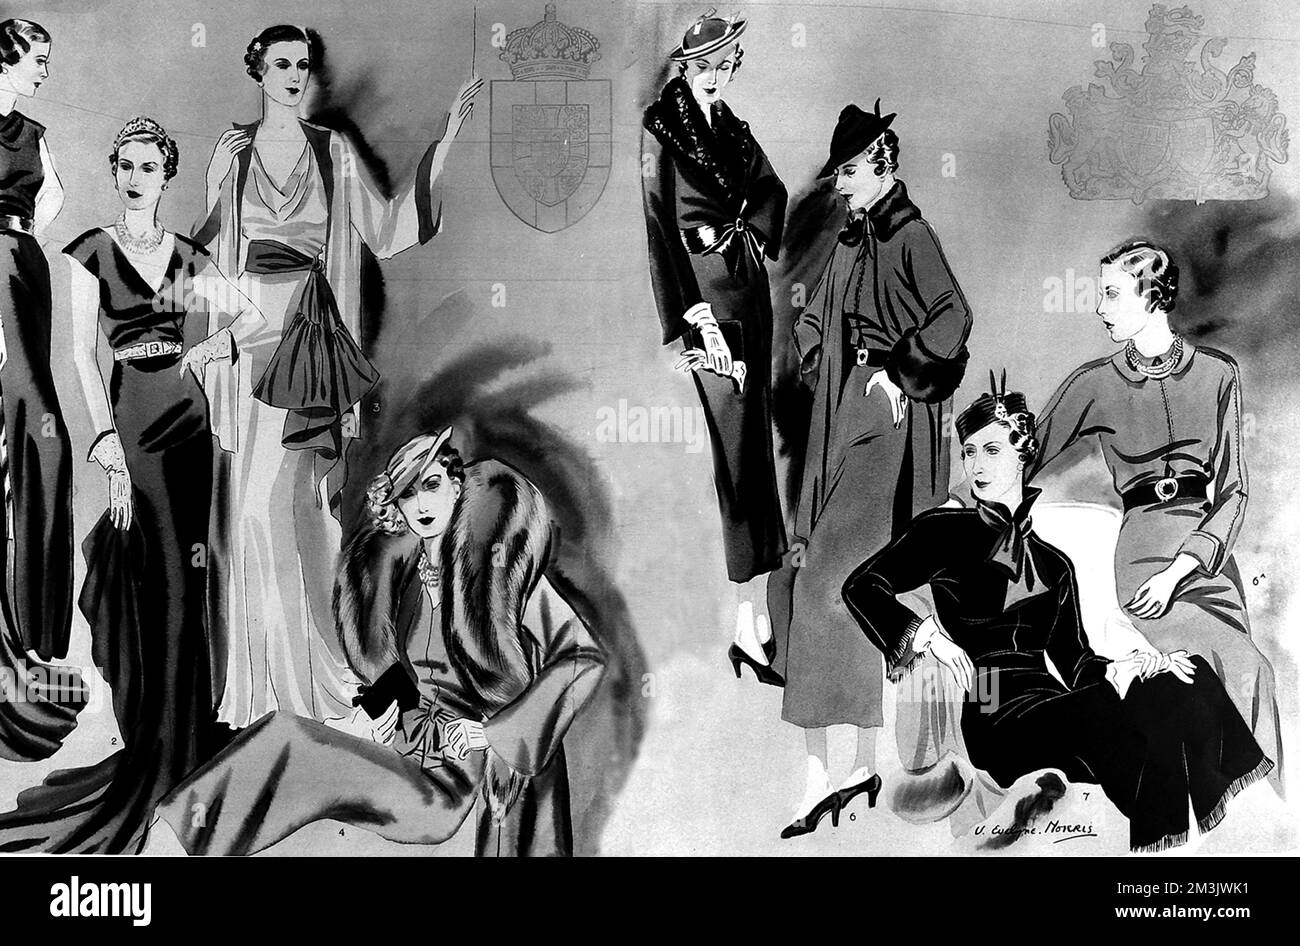 Un montage d'illustrations montrant les différentes tenues élégantes et à la mode qui faisaient partie de la duchesse du trousseau de Kent (anciennement la princesse Marina de Grèce) à l'occasion de son mariage, Prince George, duc de Kent en 1934. Date: 1934 Banque D'Images